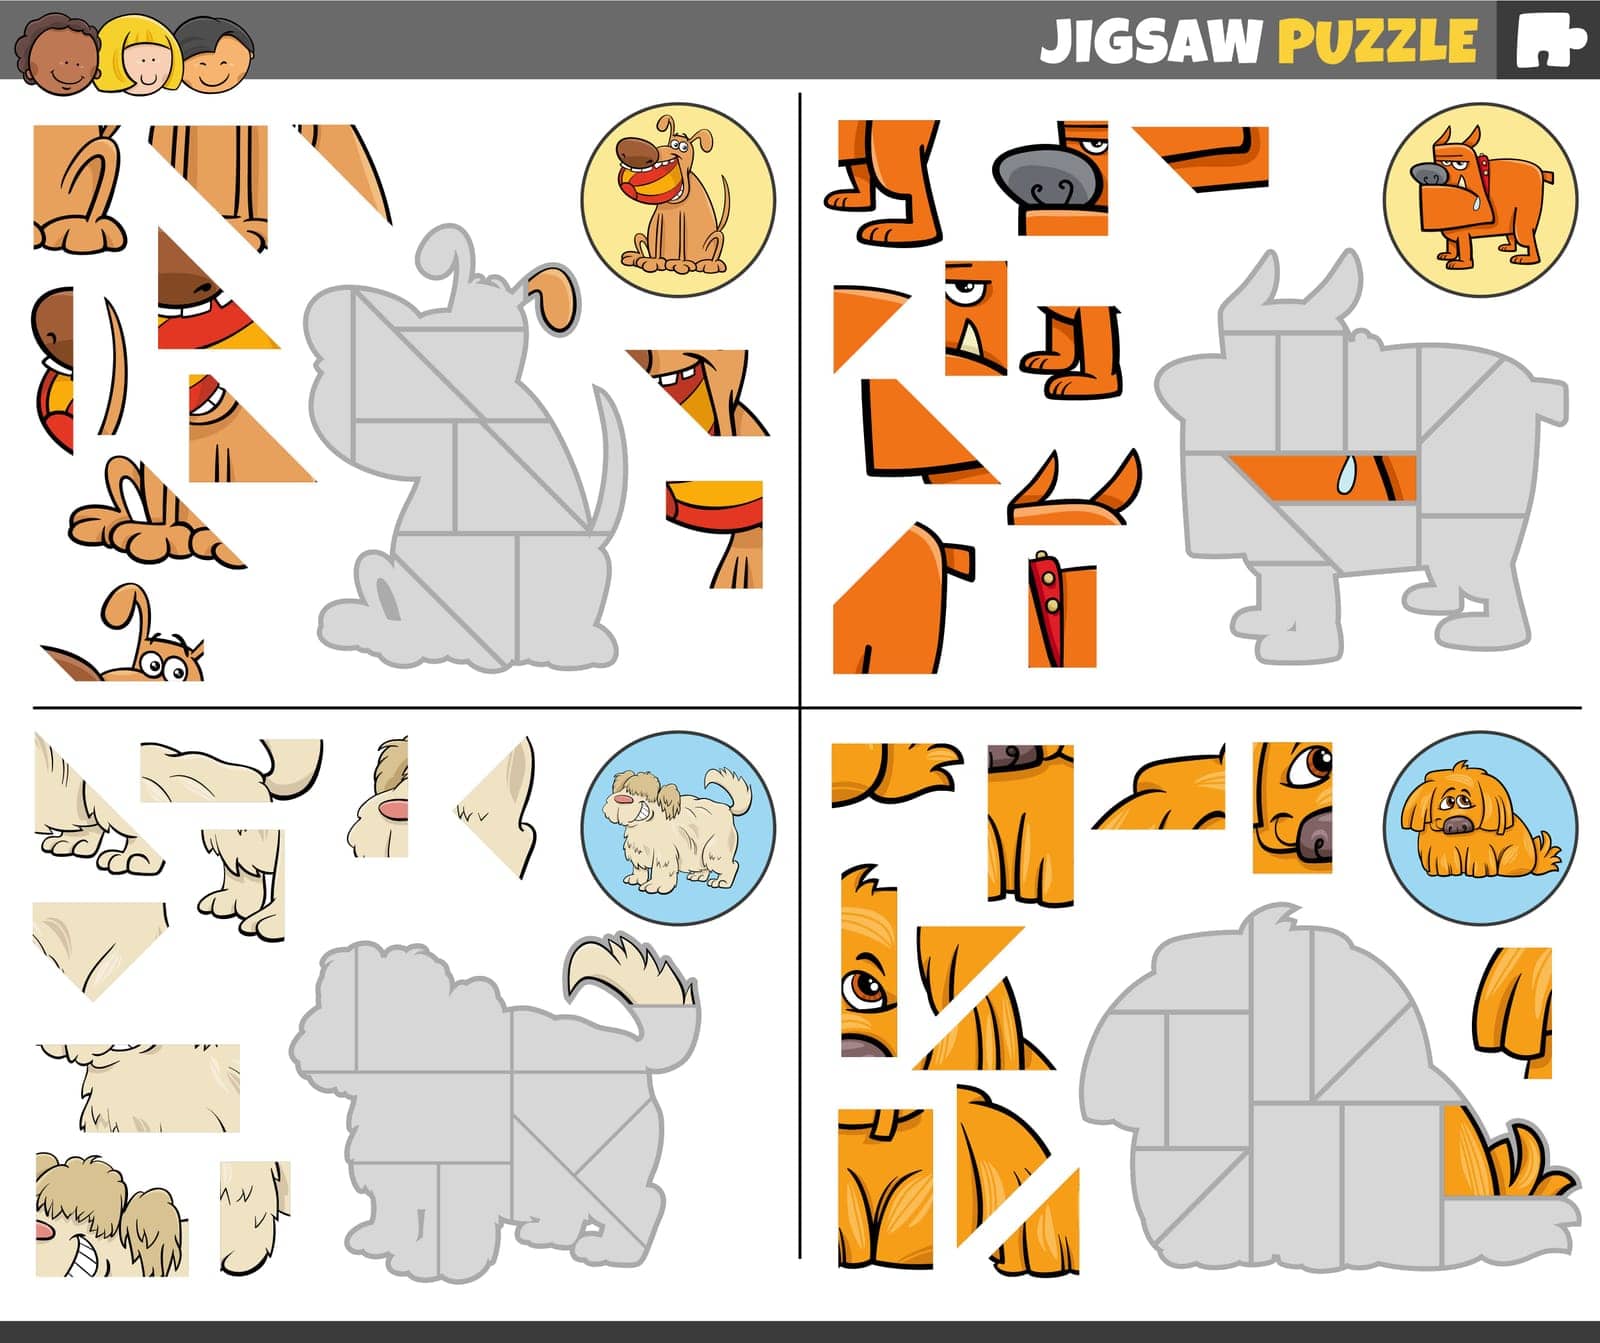 jigsaw puzzle games set with funny cartoon dogs by izakowski